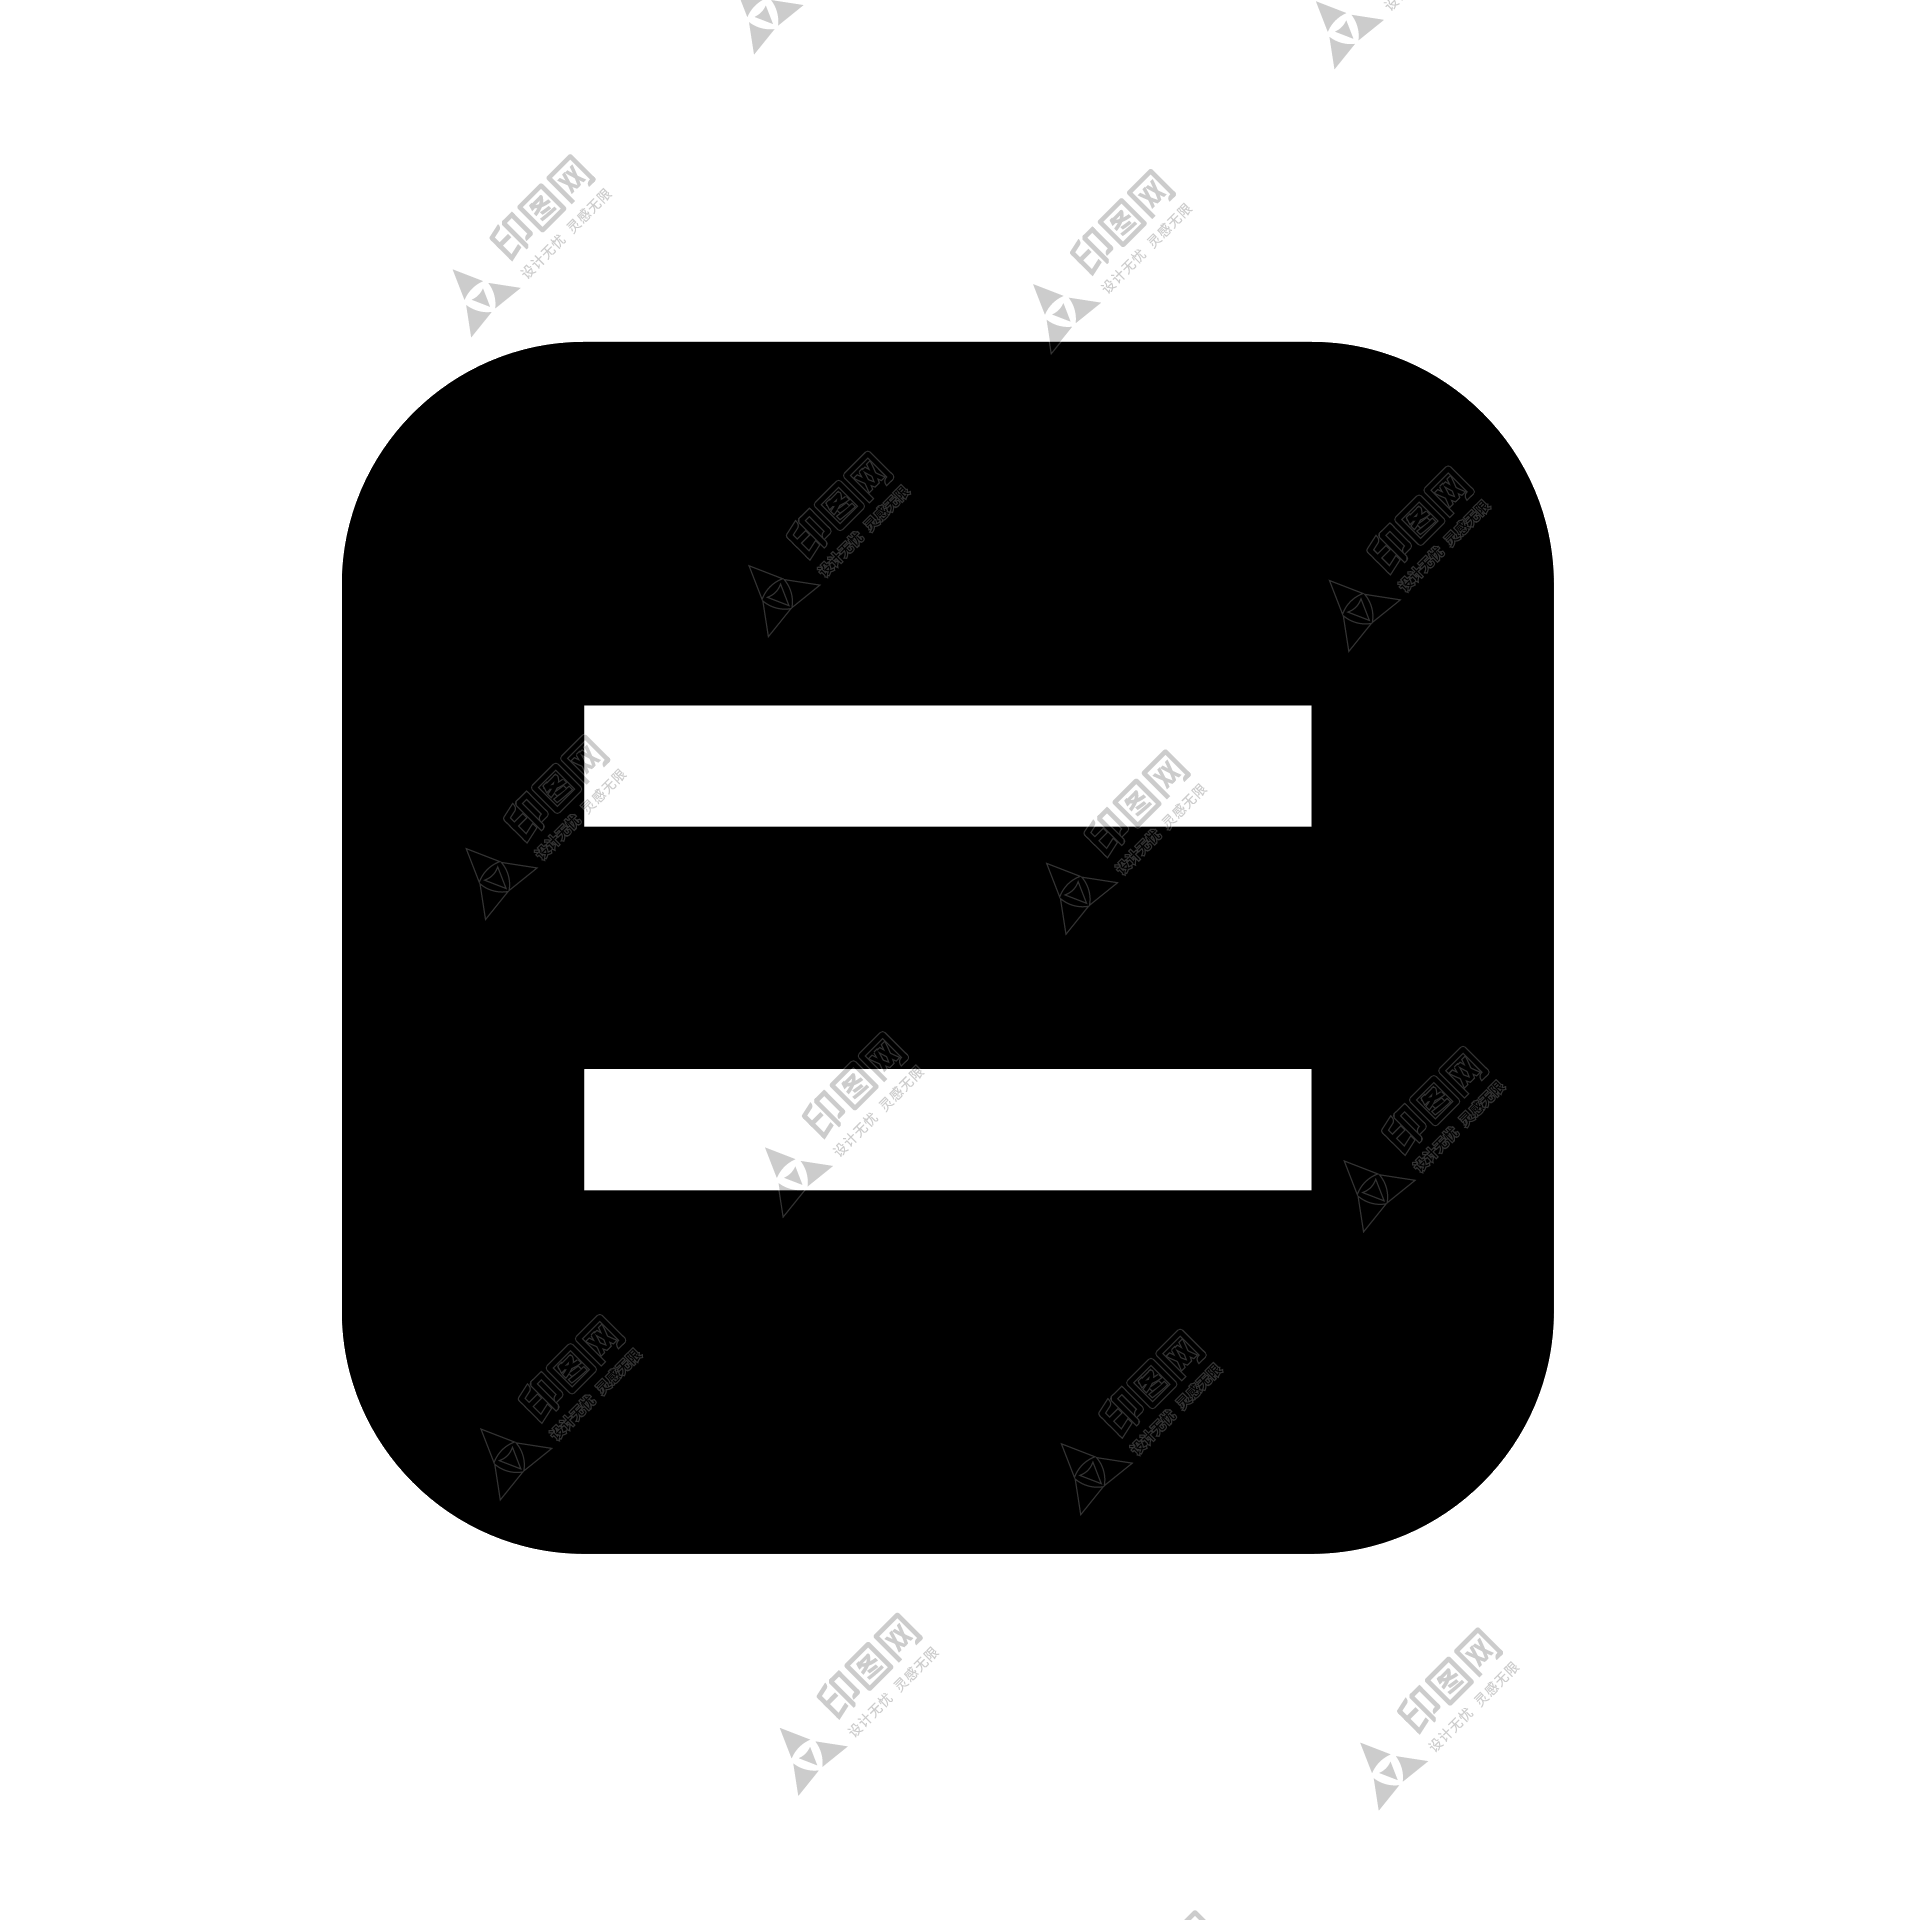 符号_标点符号_等于号_equals